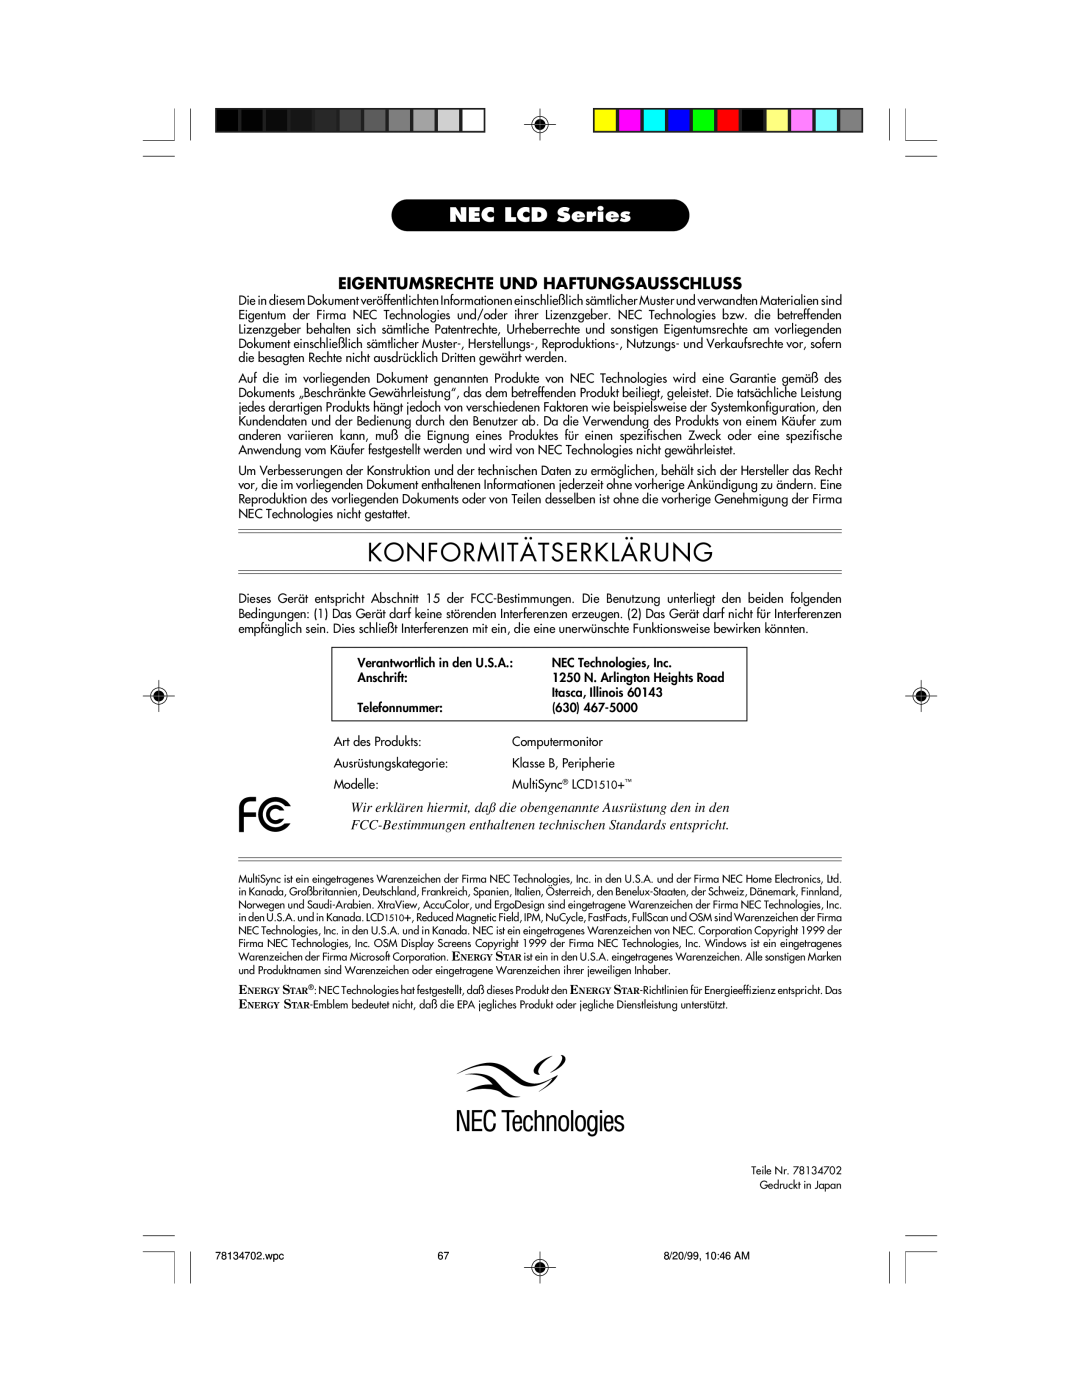 NEC LCD1510+ user manual Konformitätserklärung, NEC LCD Series, Eigentumsrechte Und Haftungsausschluss 